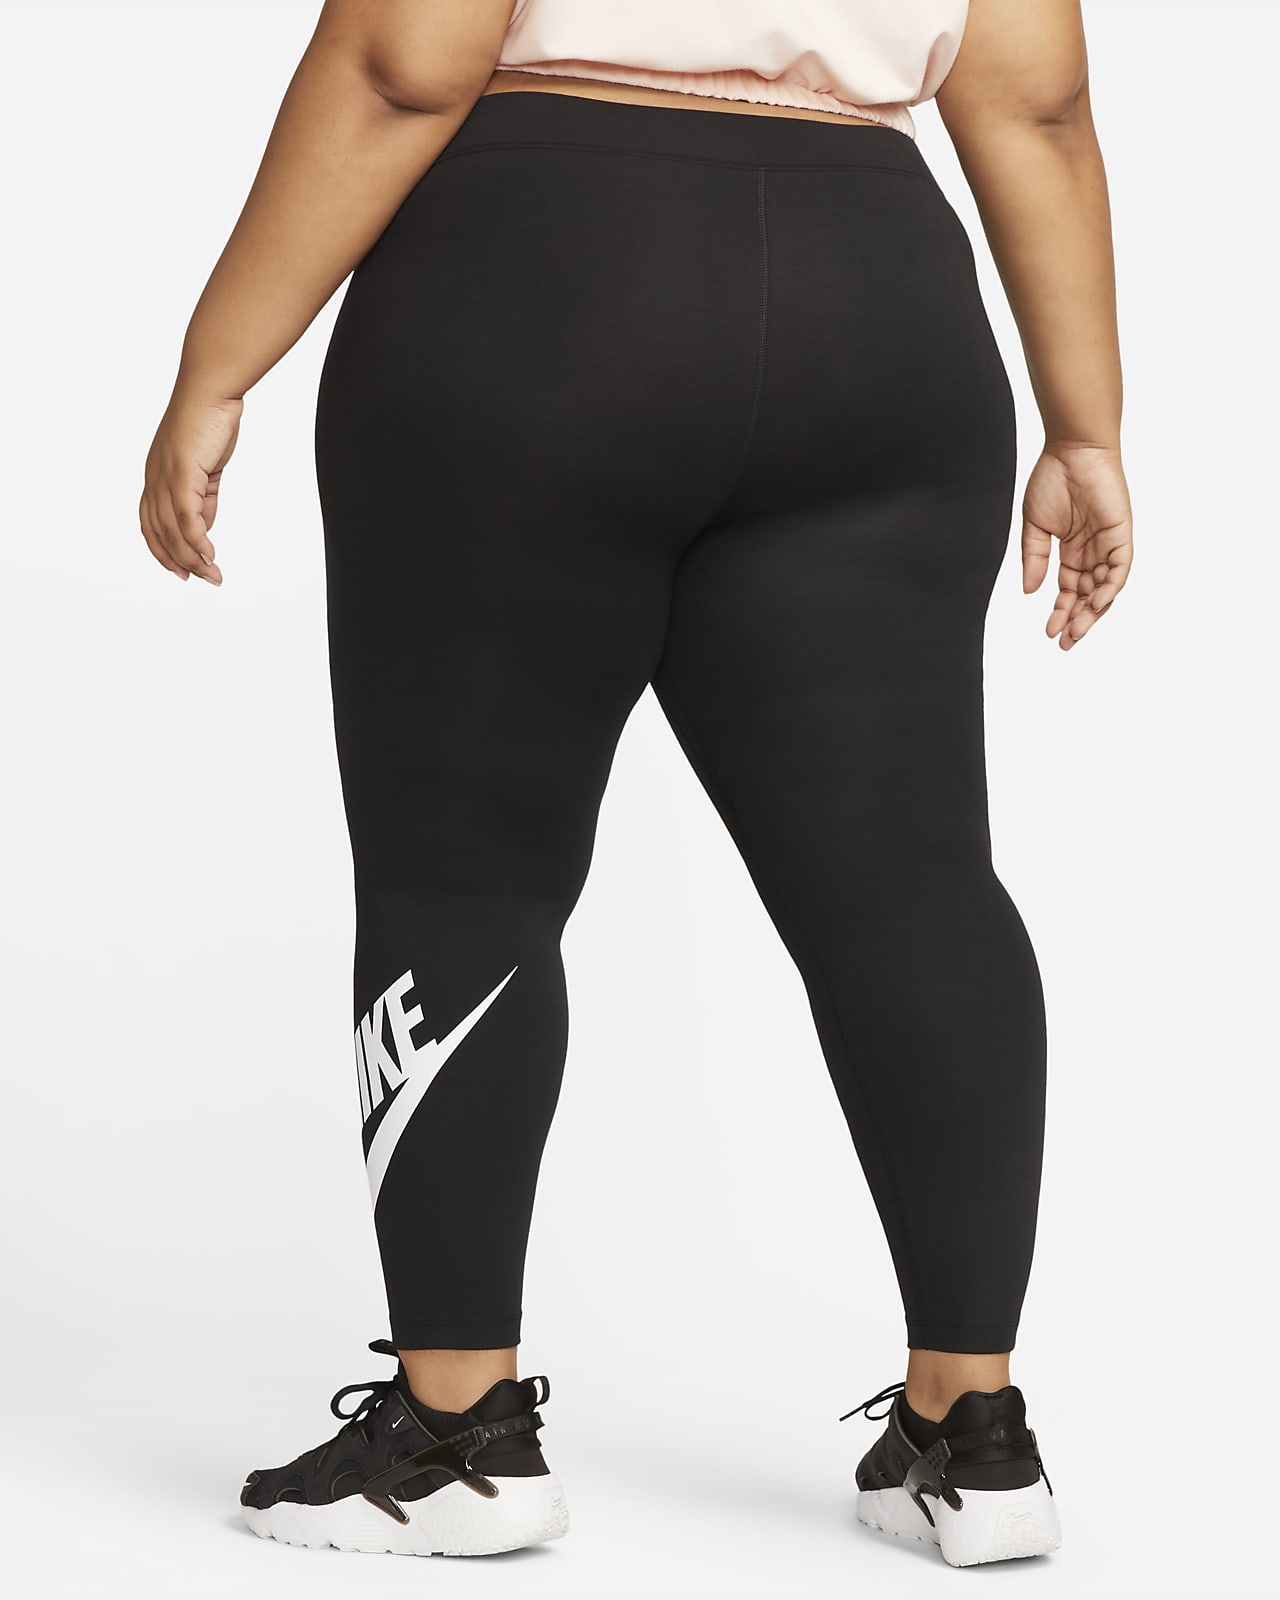 Plus Size Capri Length Tights & Leggings. Nike.com